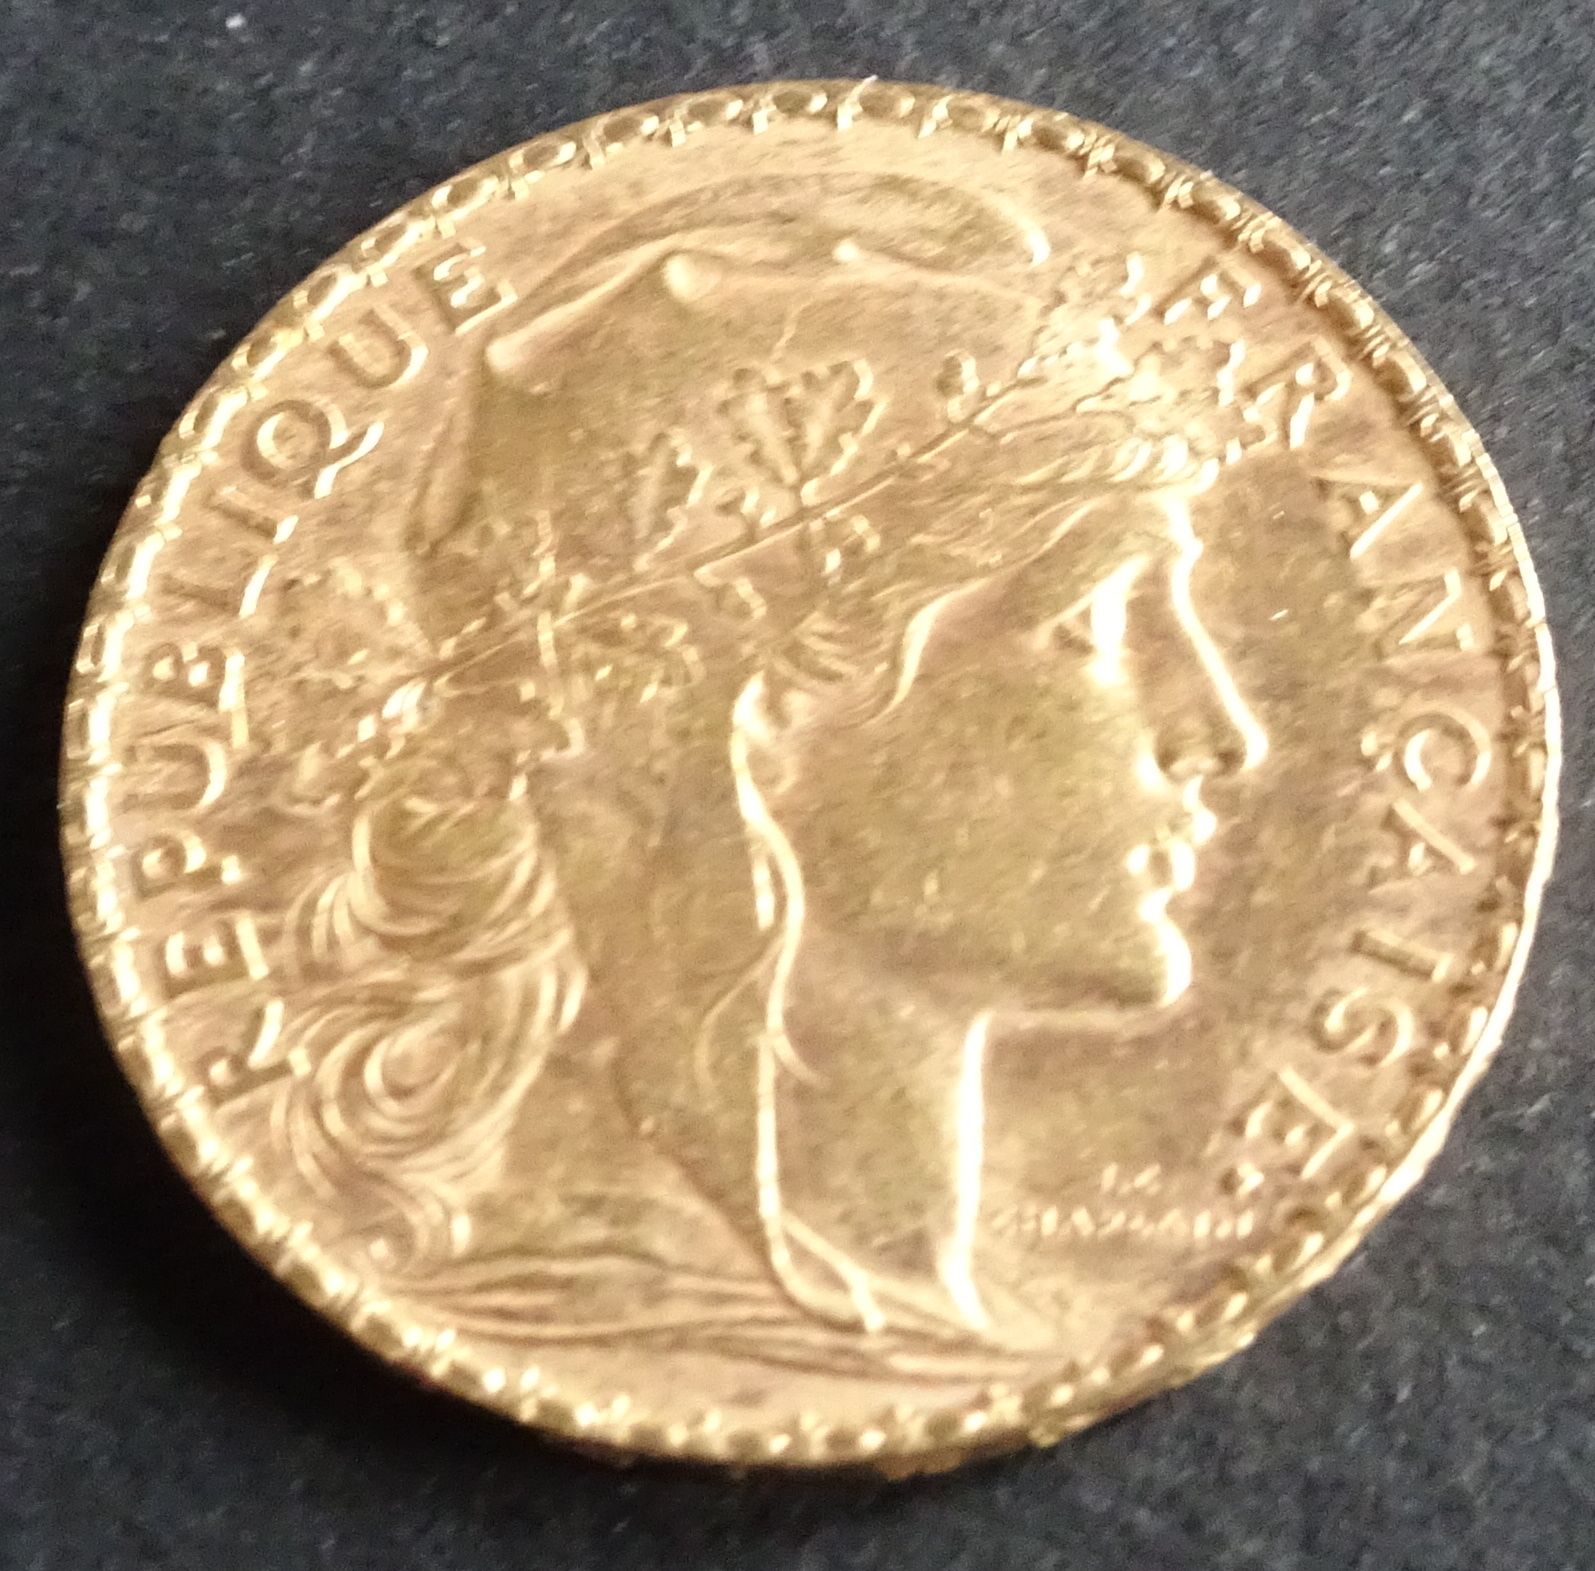 Null Moneta d'oro. Moneta d'oro da 20 franchi con gallo, 1903.
Peso: 6,47 g.